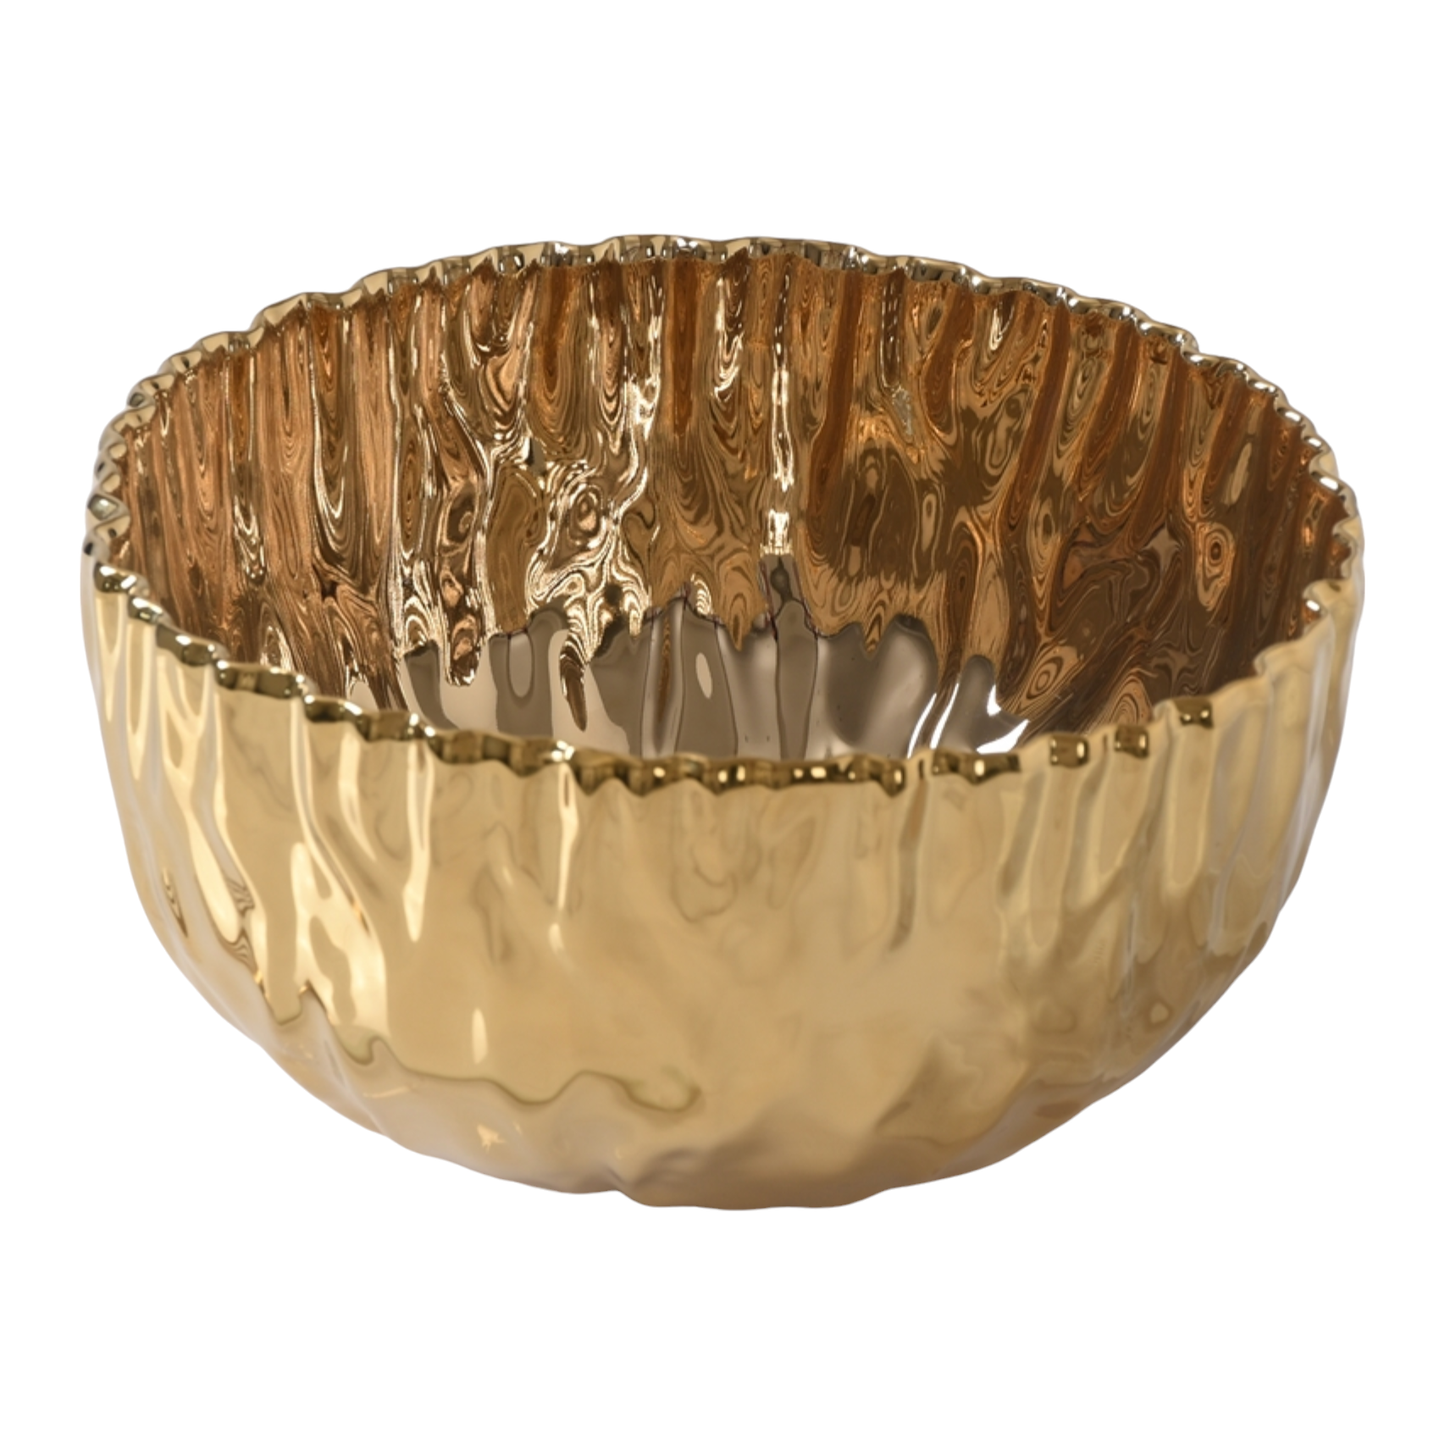 Medium Bowl - Mascali Gold